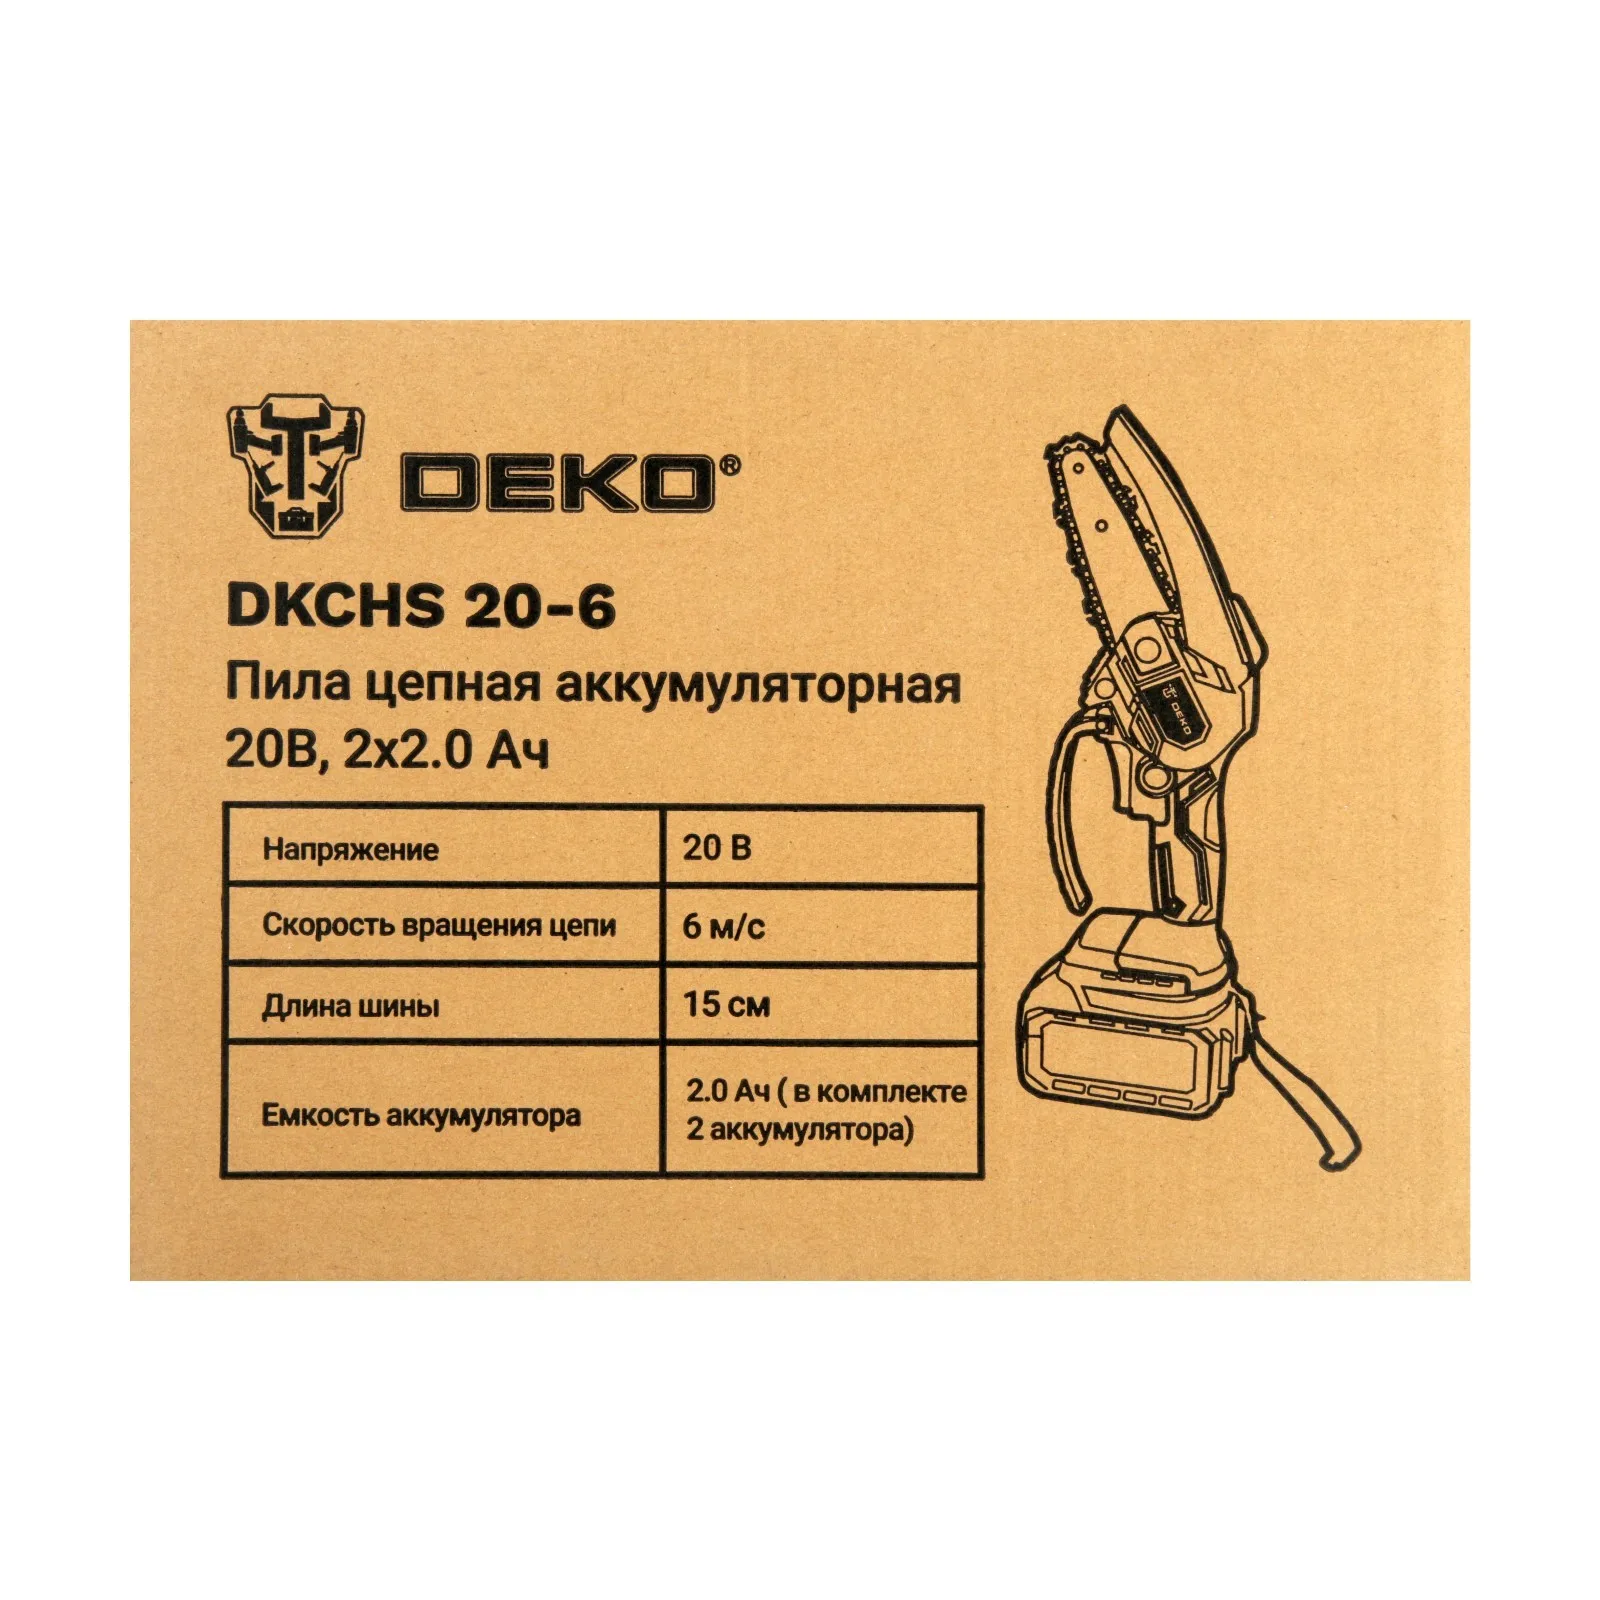 Dkchs 20 6. Аккумуляторная цепная пила Deko DKCHS 20-6. Deko DKCHS 20-6 20 В, 2x2 а*ч. Пила цепная аккумуляторная Deko DKCHS 20-6, 20 В, 1x3.0 Ач 063-4307-1. Пила цепная Deko DKCHS 20-6 инструкция.